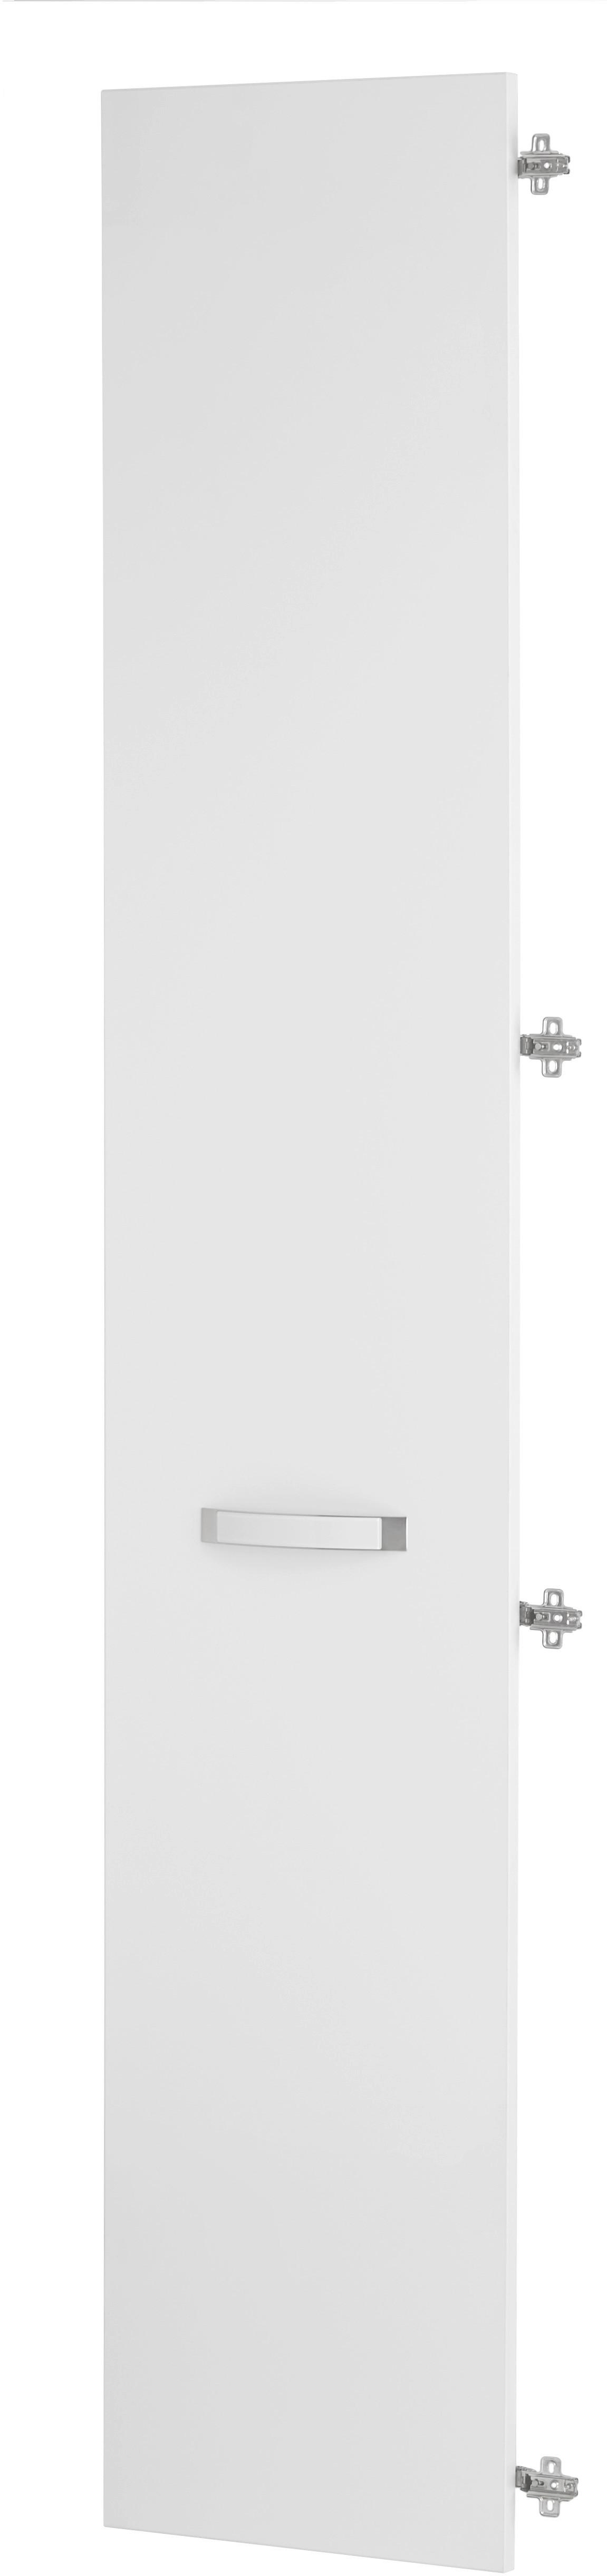 Tür in Weiß Hochglanz - Weiß, MODERN, Holzwerkstoff/Kunststoff (39.4/210.9/1.8cm) - Premium Living